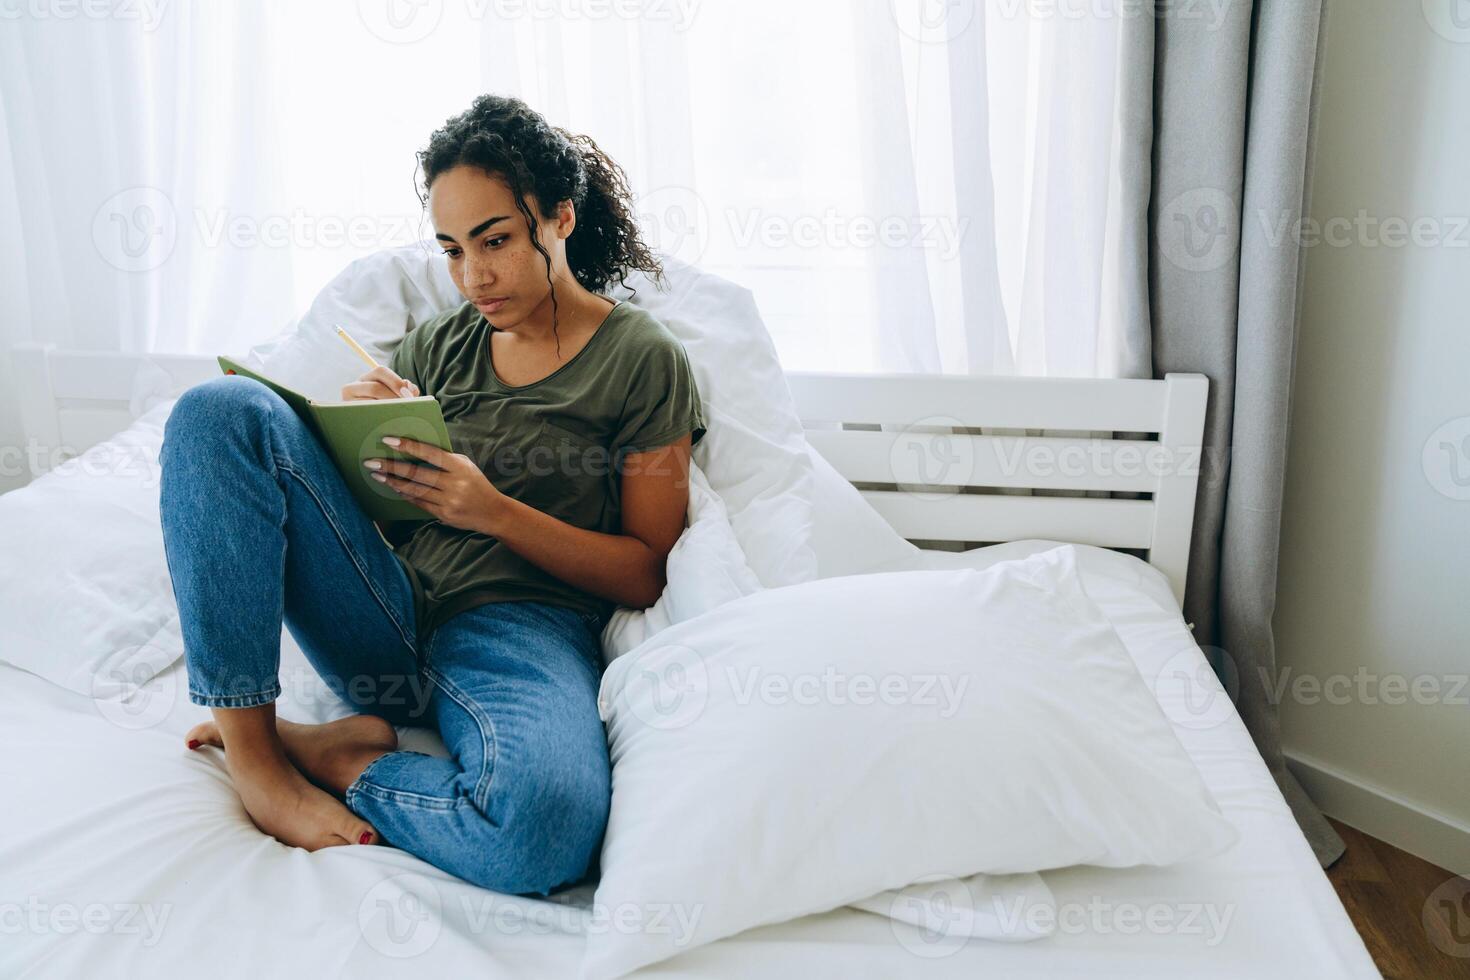 eftertänksam afrikansk kvinna skriver något i anteckningsblock på sängen foto